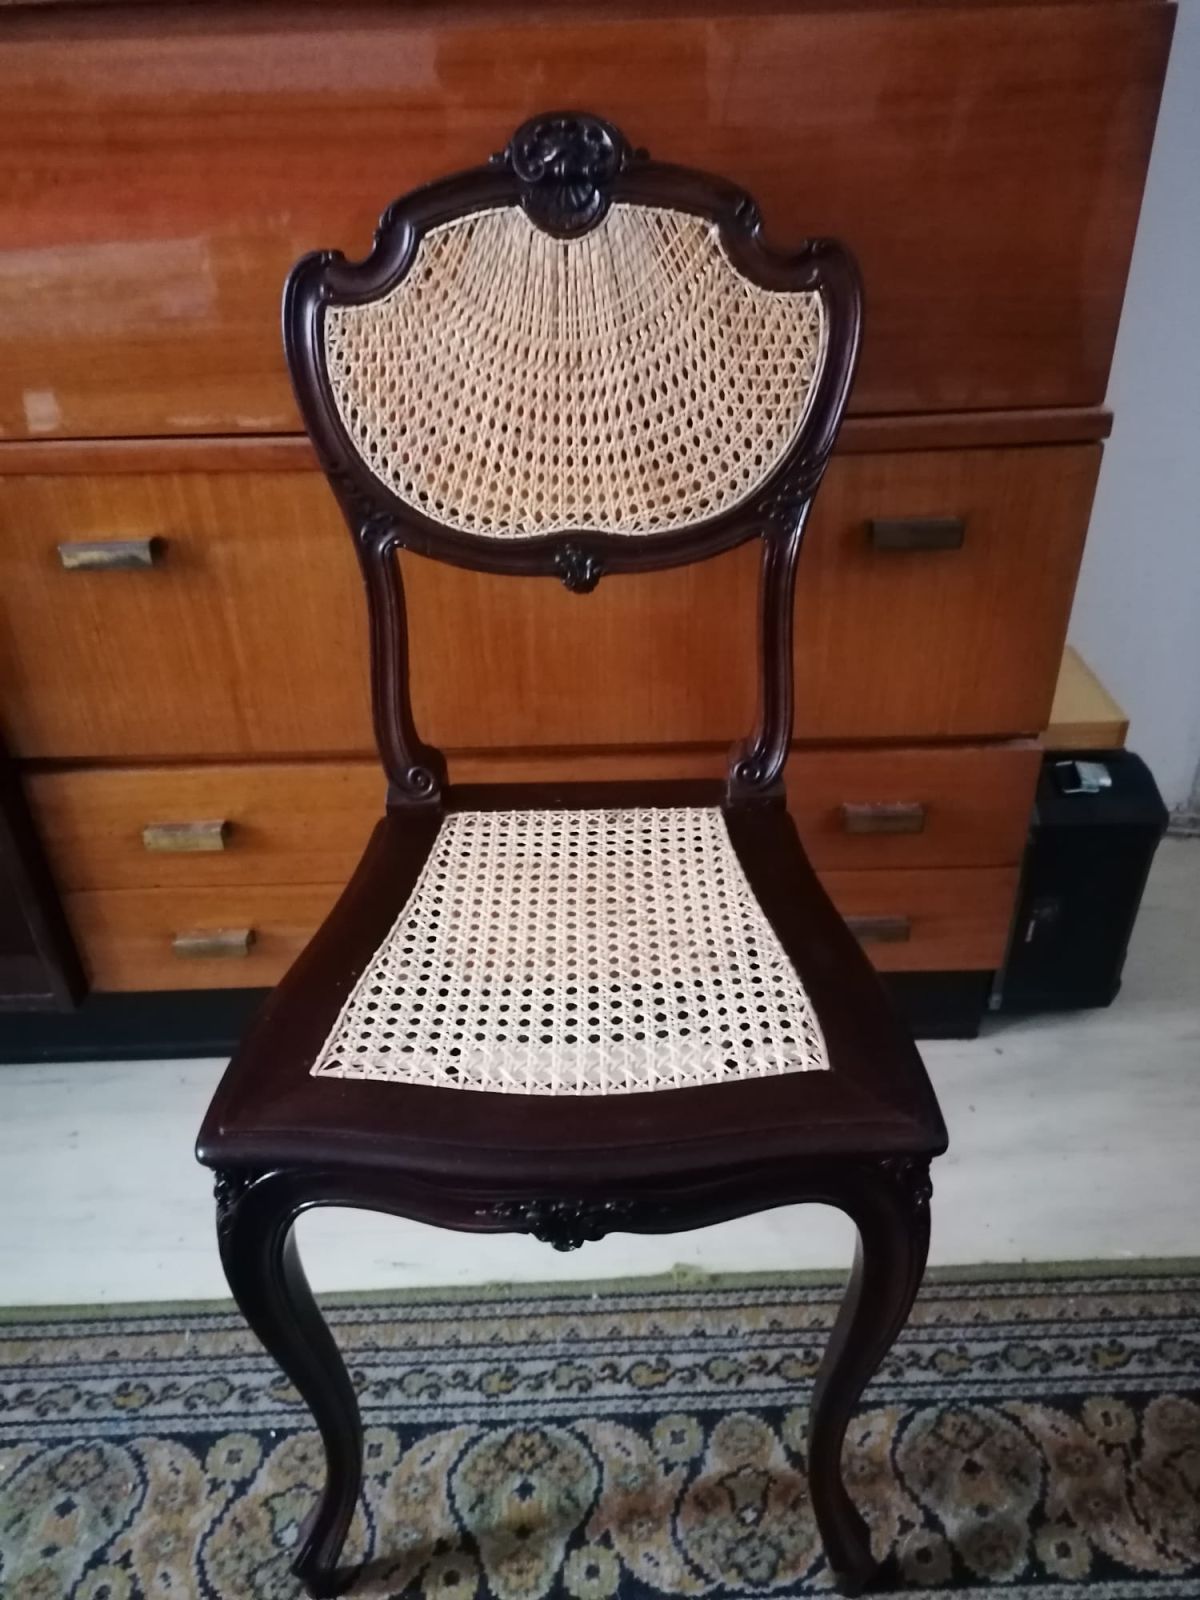 Gamla möbler får nytt liv. För restaurering och renovering, köp kvalitetsband av sockerrör för reparation av stolar från vår webbshop.